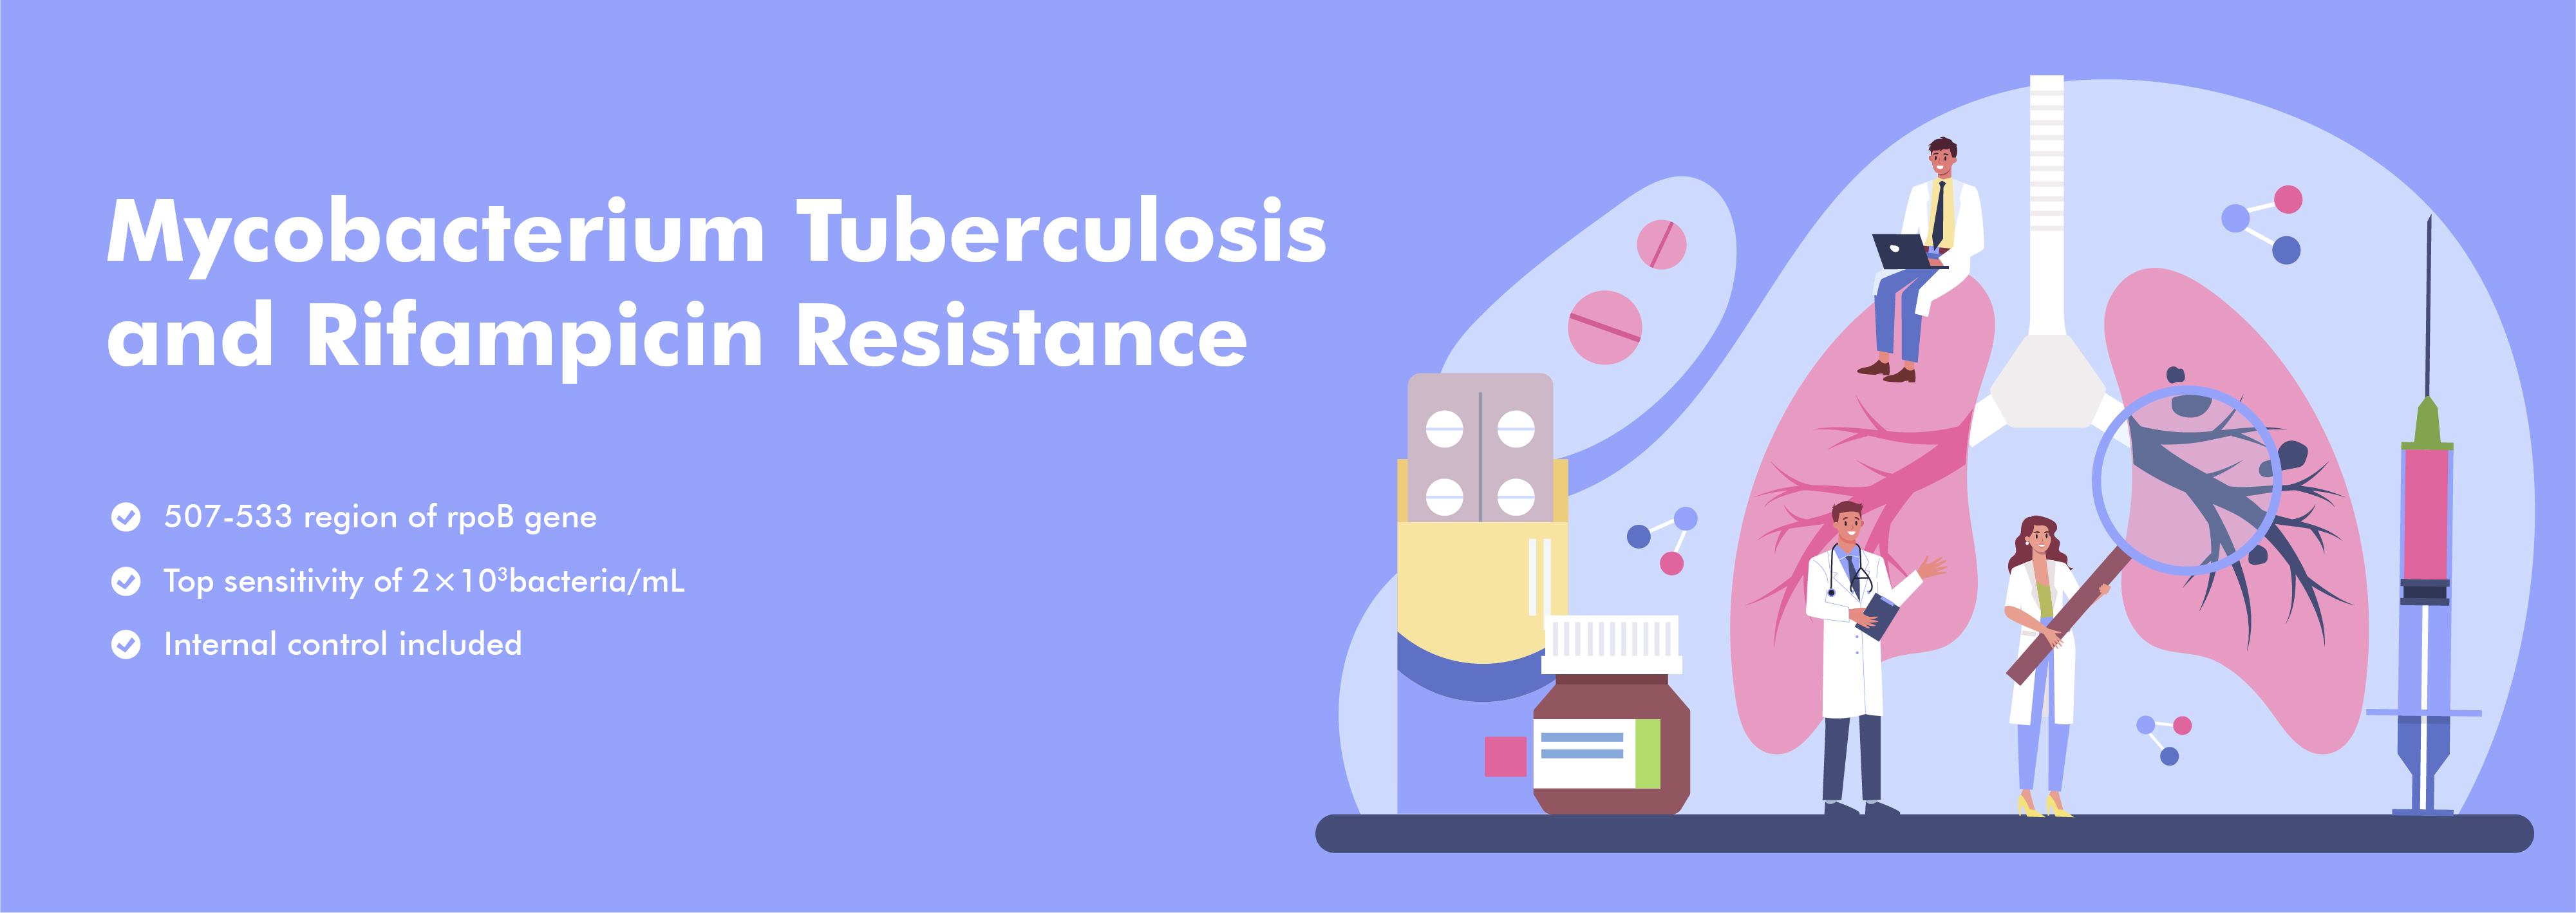 Mycobacterium Tuberculosis ອາຊິດນິວຄລີອິກແລະການຕໍ່ຕ້ານ Rifampicin